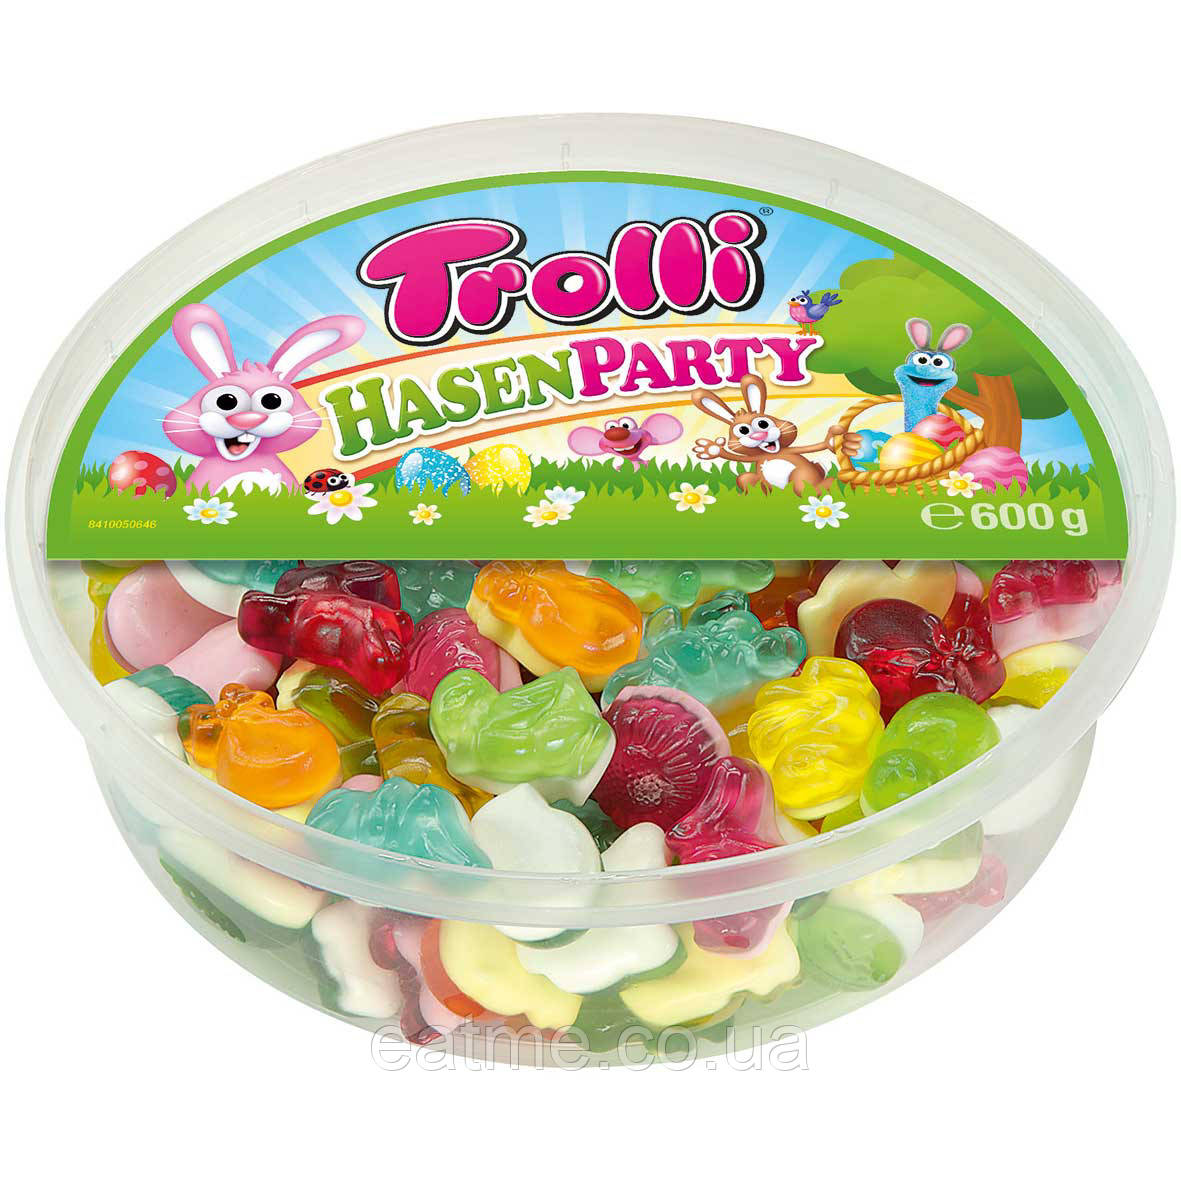 Trolli Hasen Party Великодня серія желейних цукерок із фруктовими смаками 600g